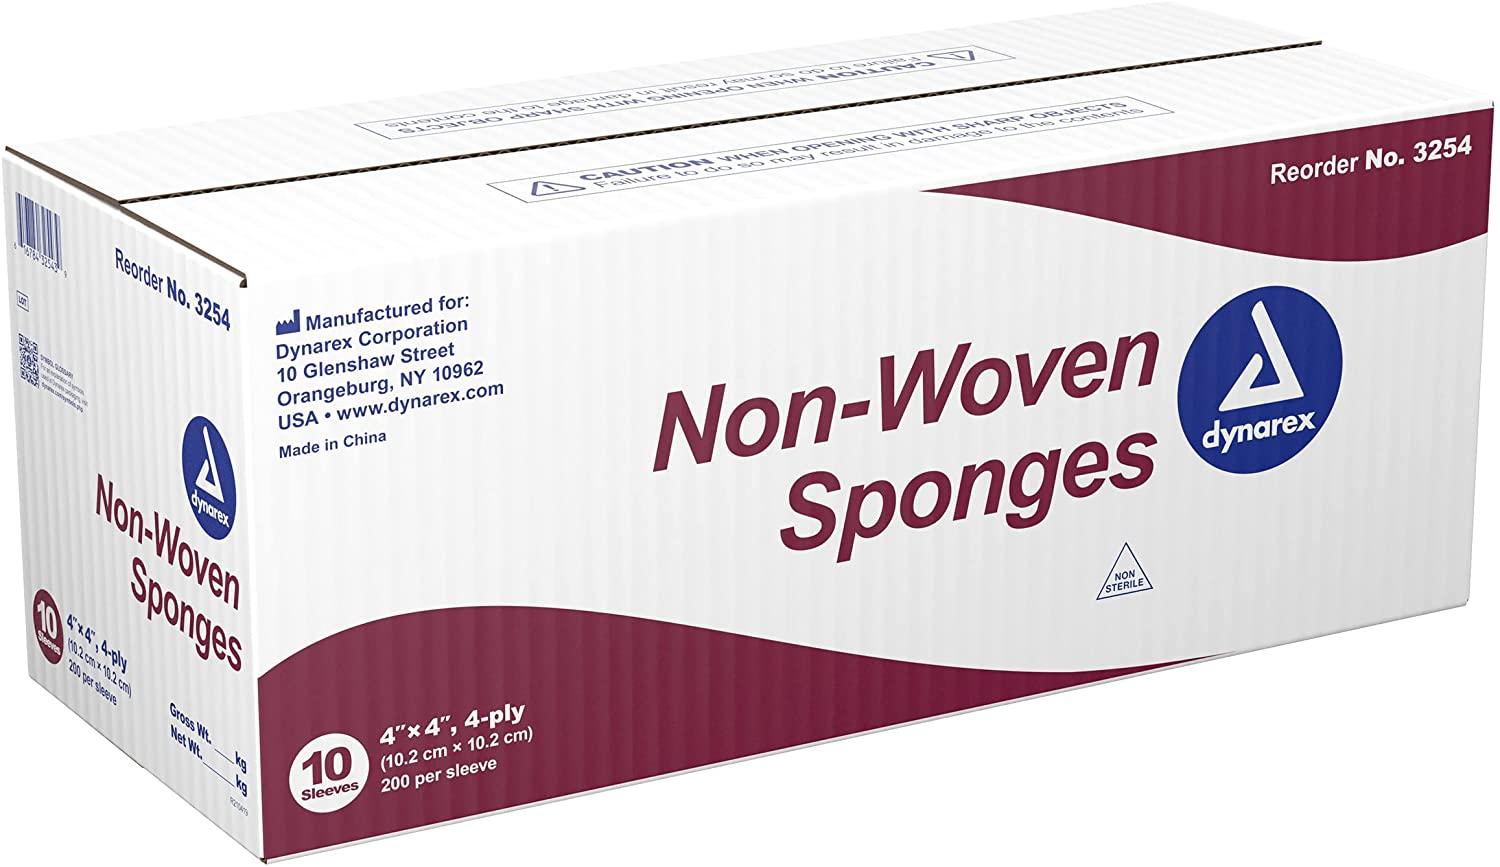 Dynarex Non-Sterile Non Woven Sponge, 4x4 Inch, 200 Count